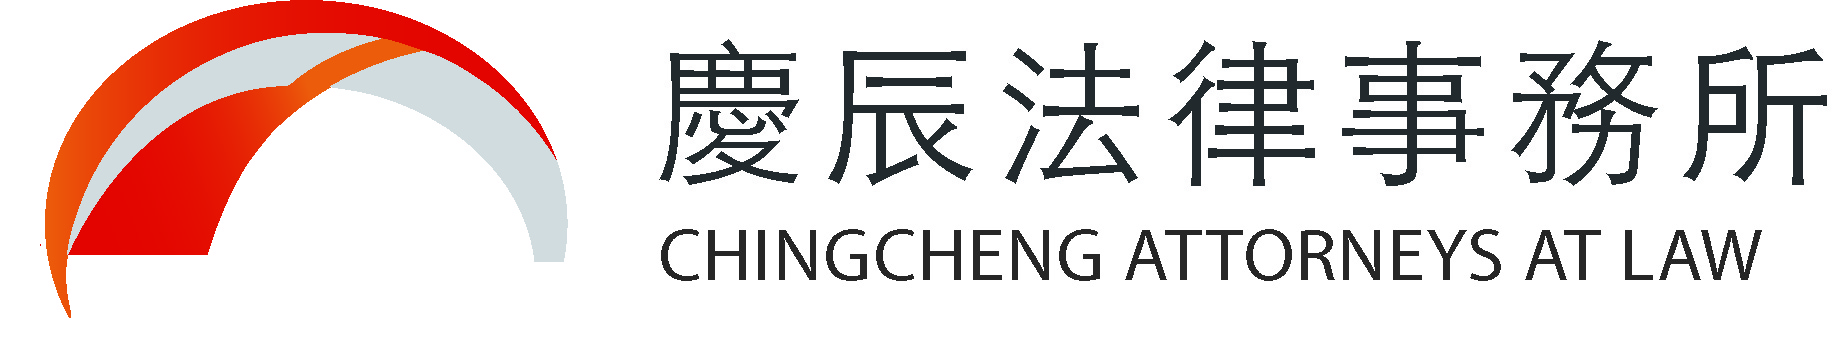 慶辰logo.jpg